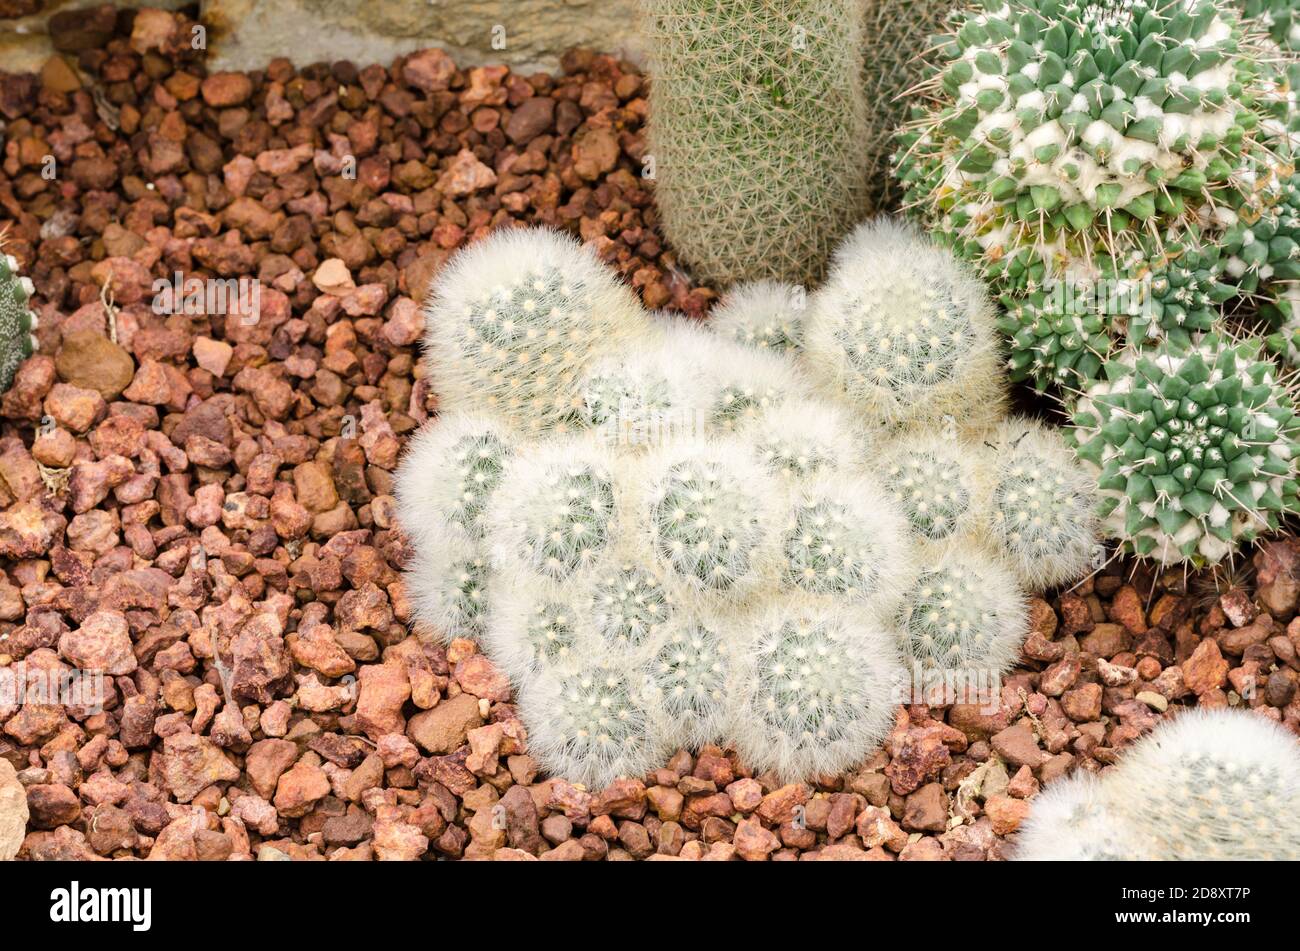 Mammillaria cactus plant Stock Photo